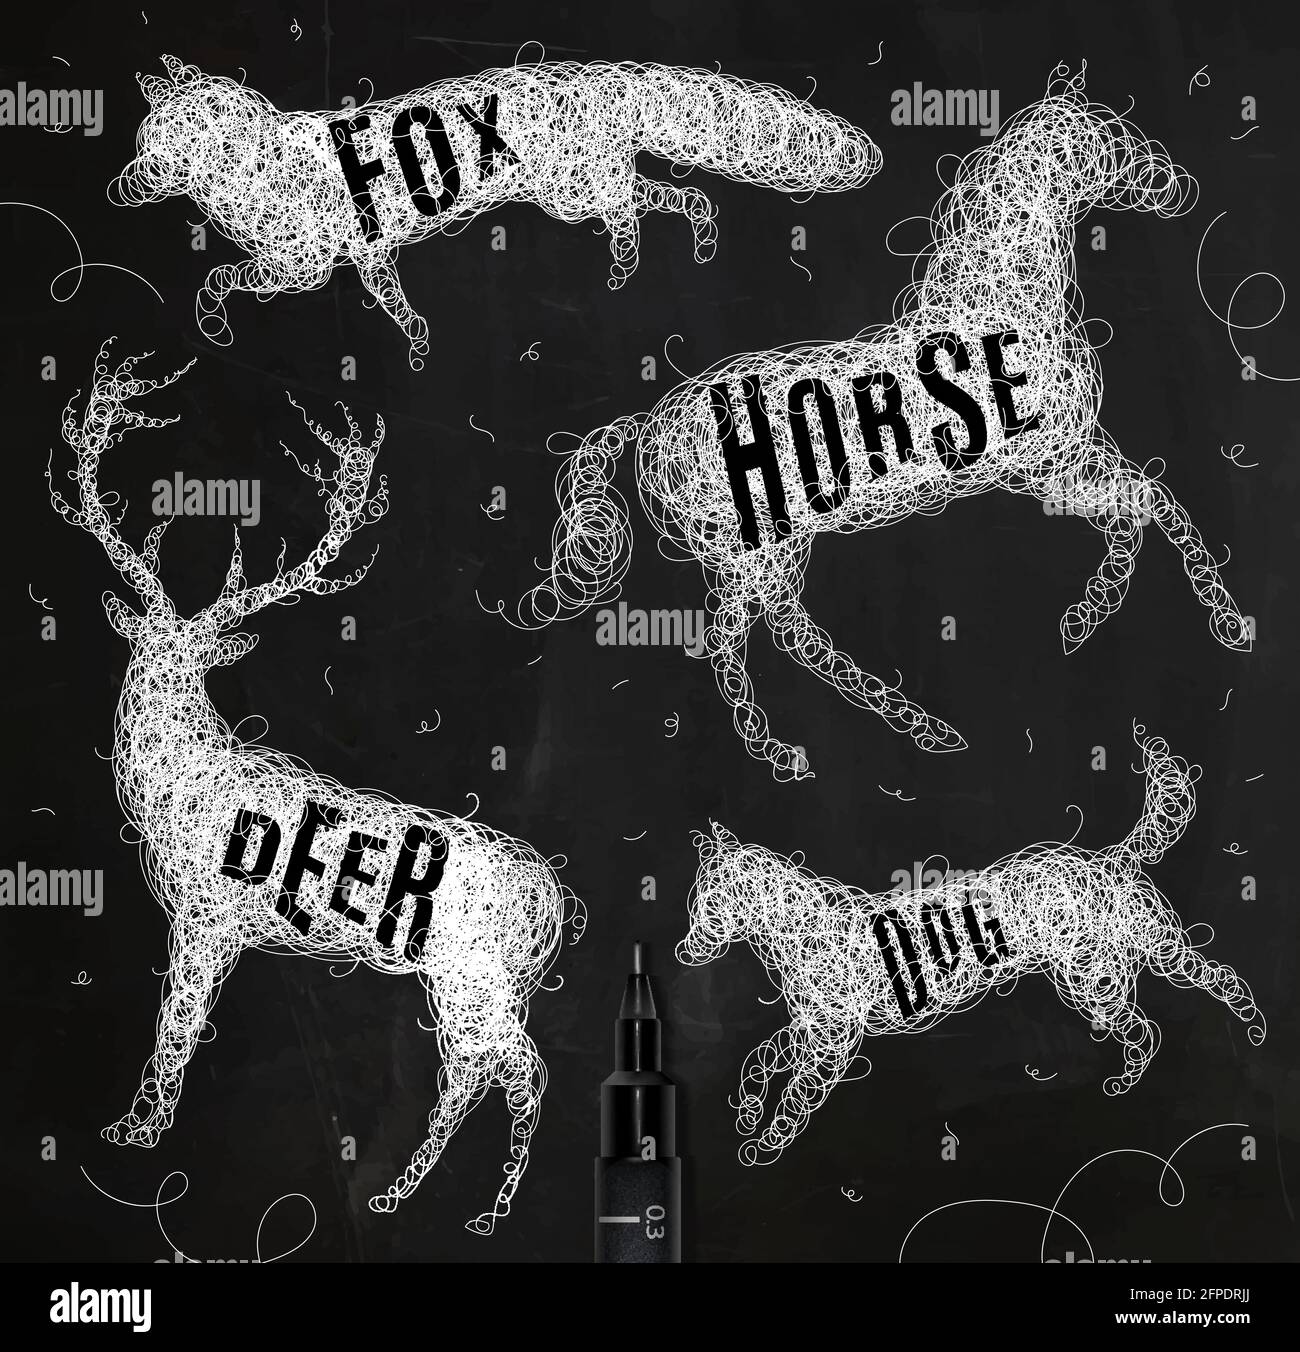 Stylo main dessin enchevêtrement animaux sauvages cerf, cheval, renard, chien avec inscription noms des animaux dessin avec encre blanche sur fond noir Illustration de Vecteur